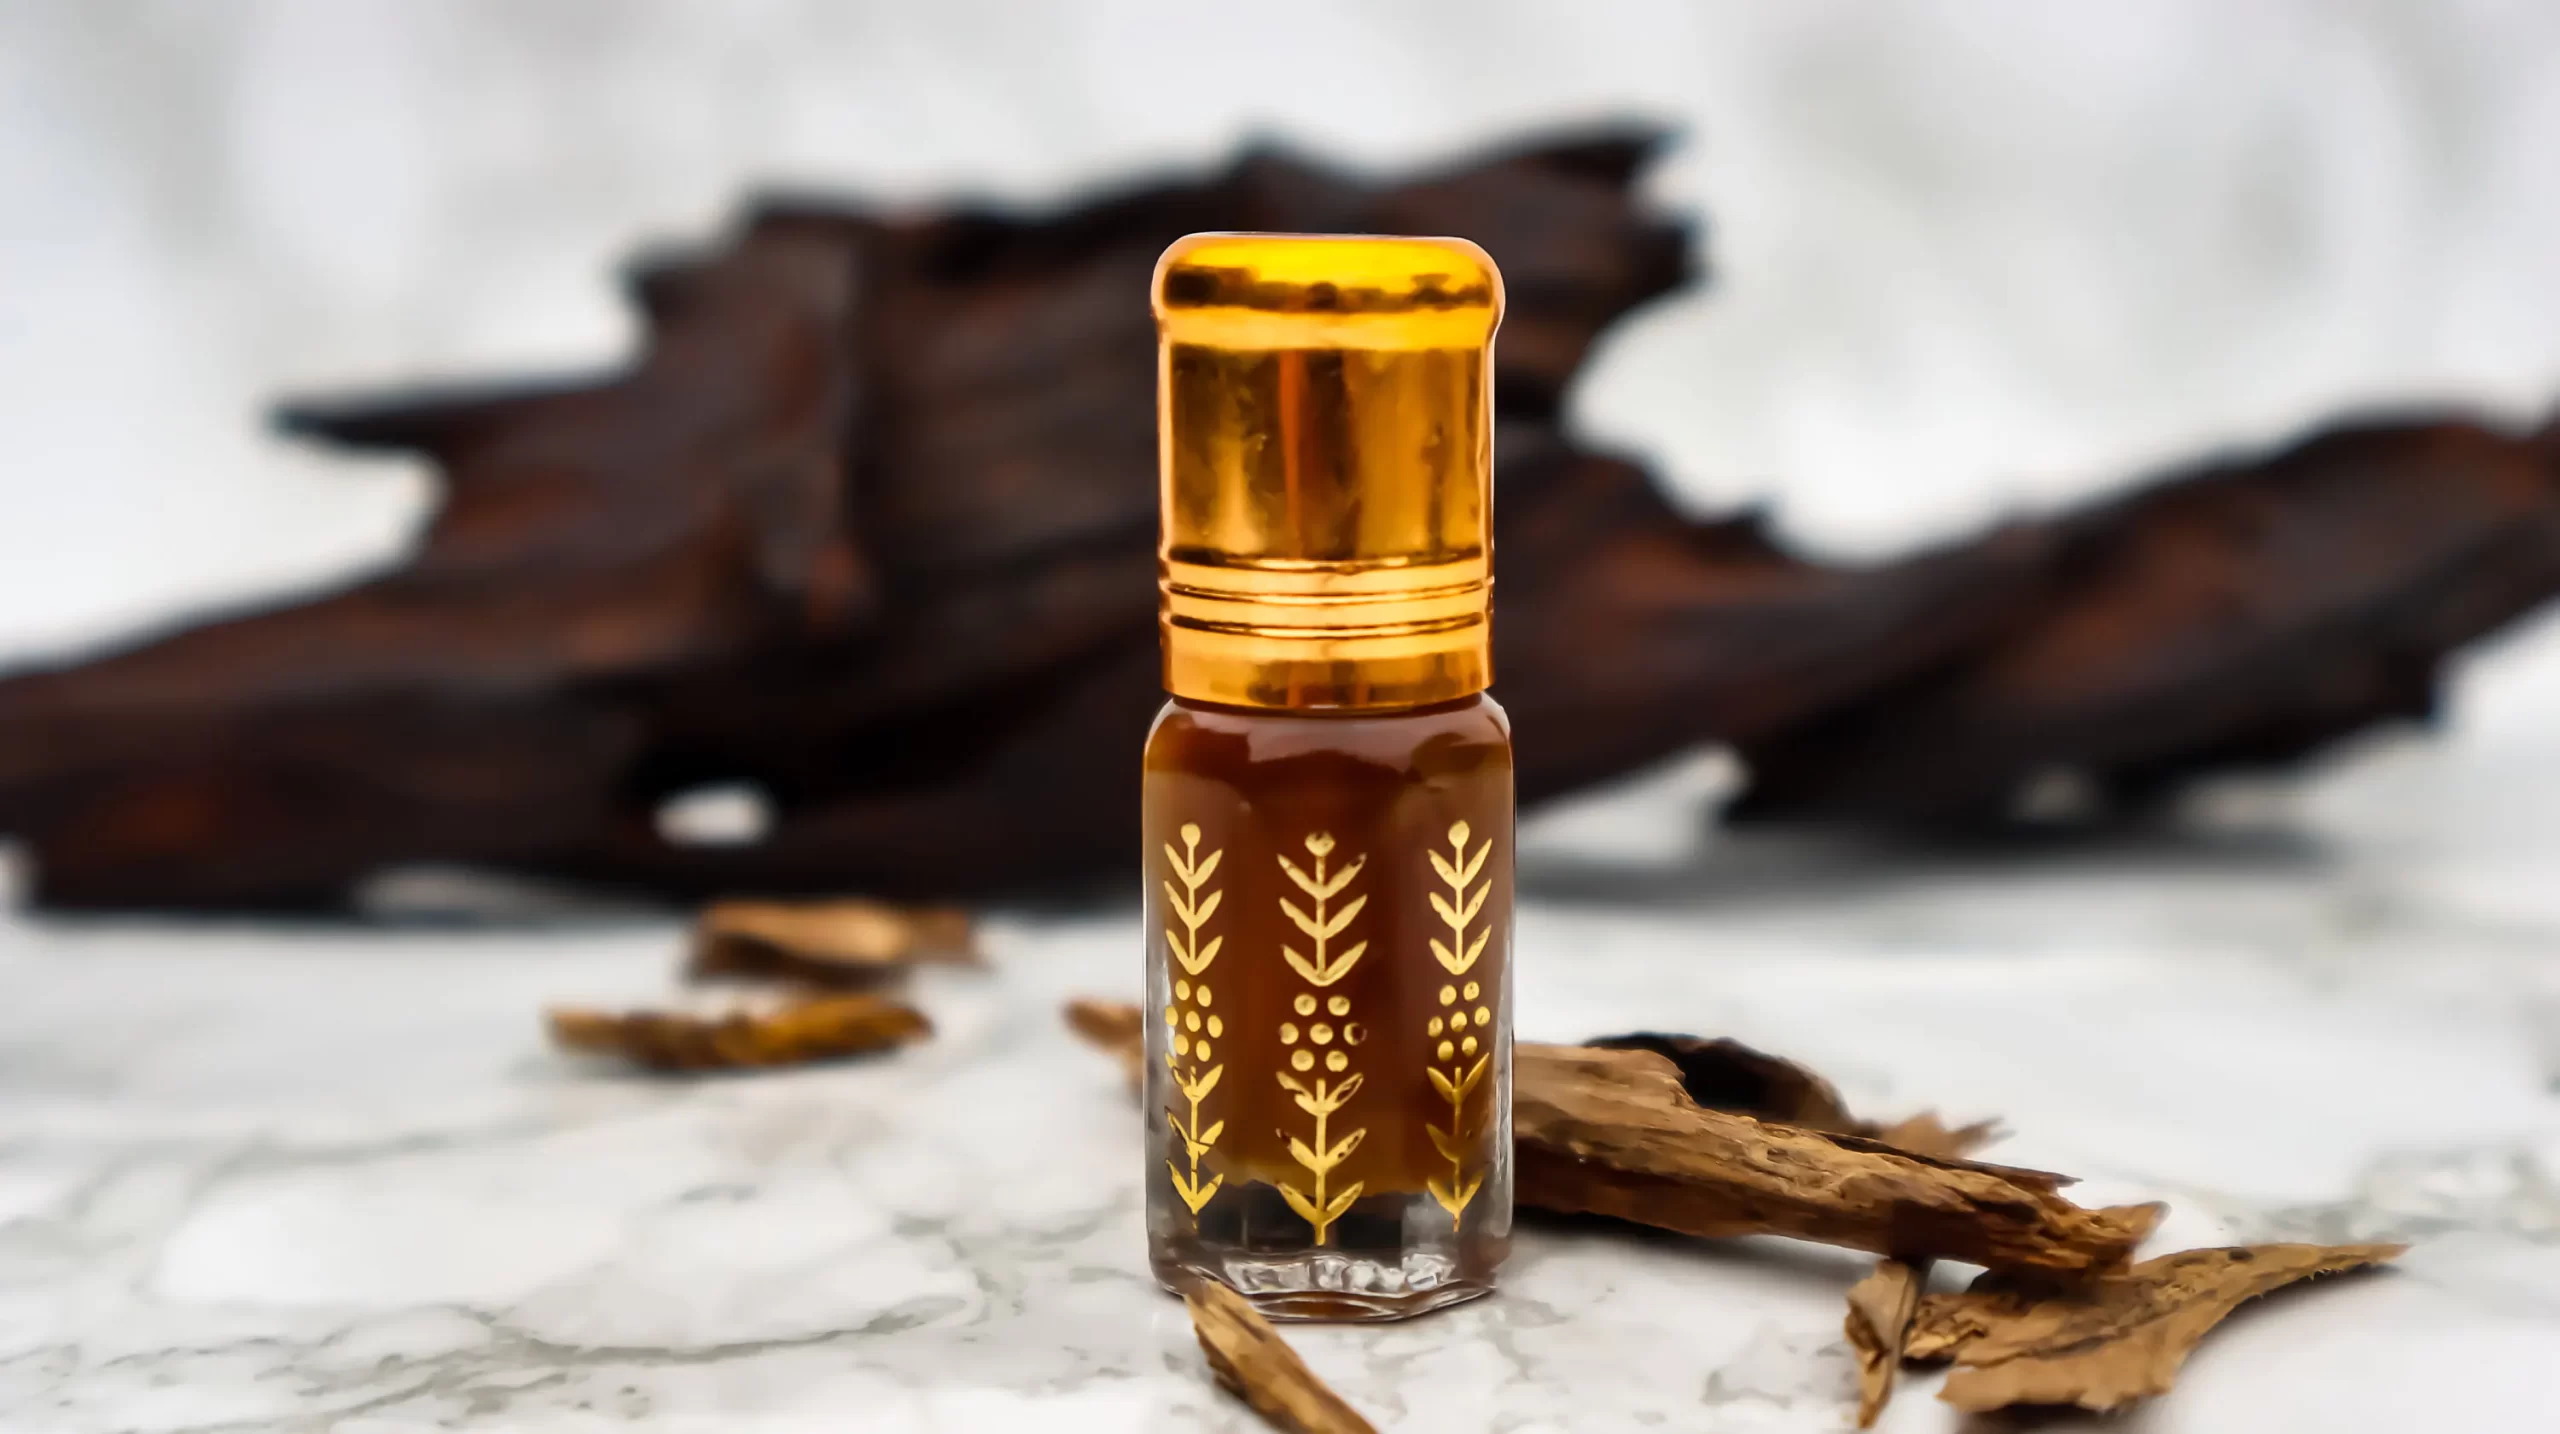 Tinh dầu trầm hương – 19 lợi ích tuyệt vời cho người sử dụng (P1)